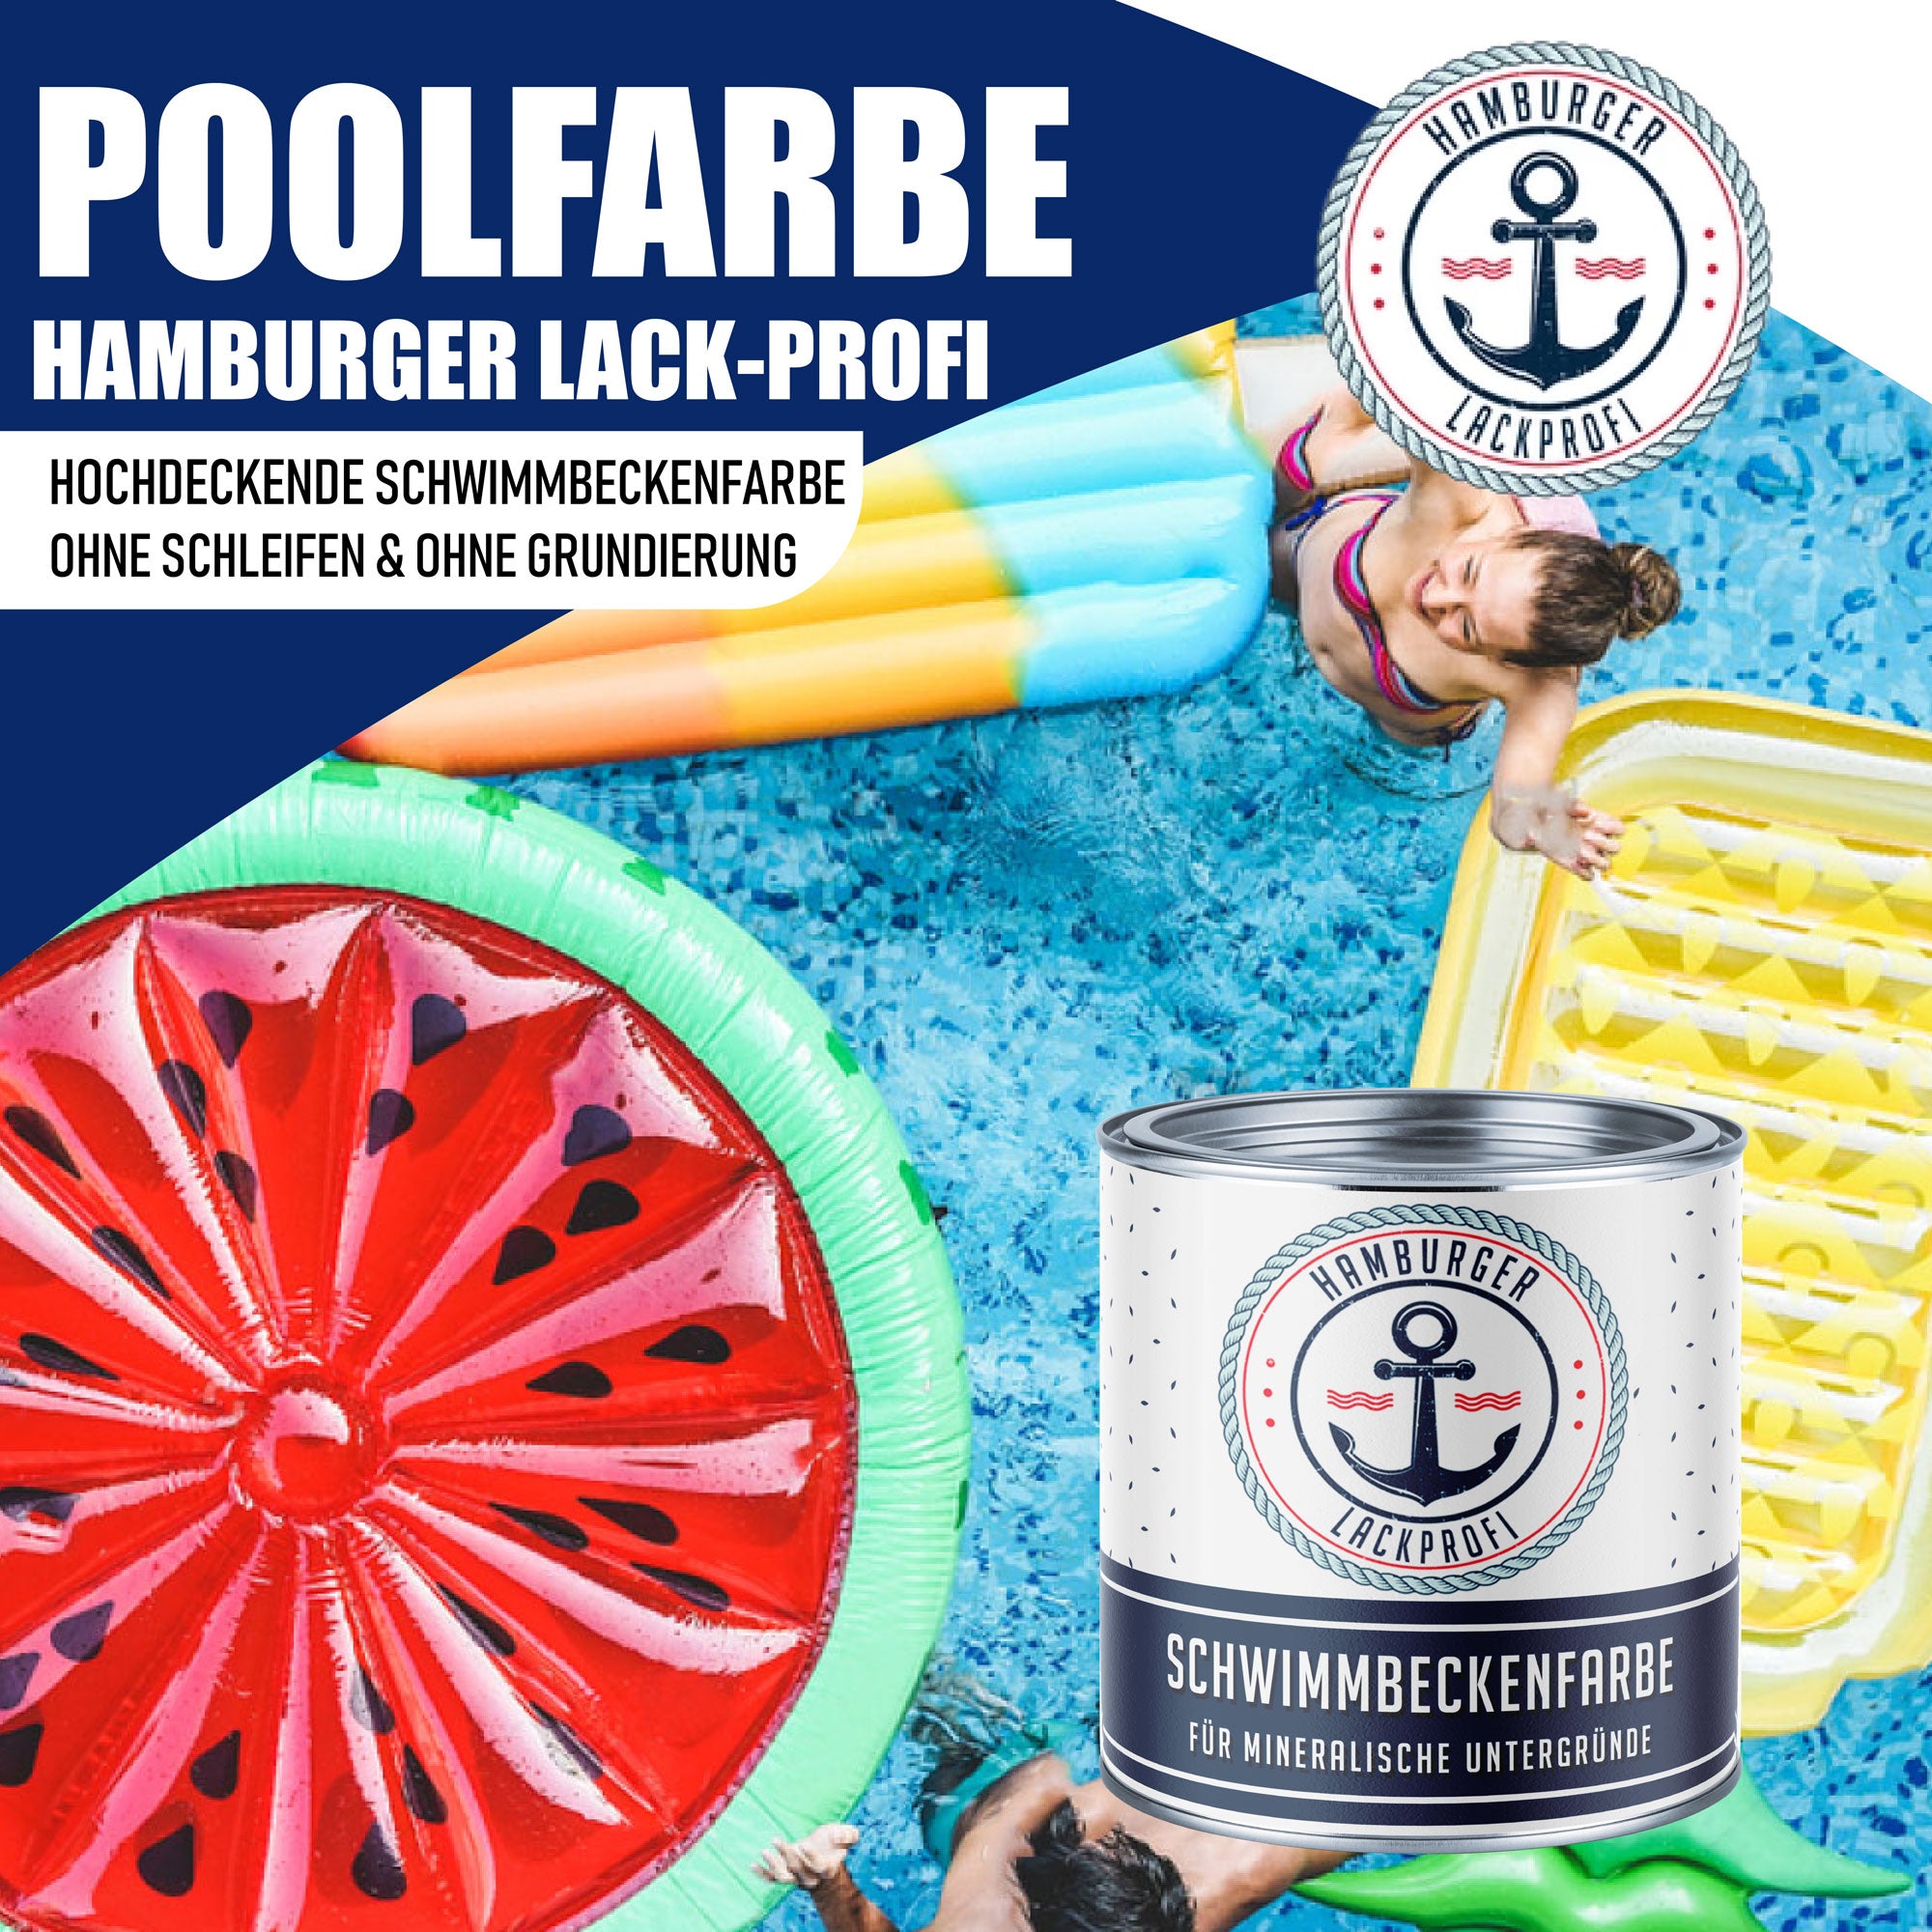 Hamburger Lack-Profi Schwimmbeckenfarbe Goldgelb RAL 1004 - hochdeckende Poolfarbe